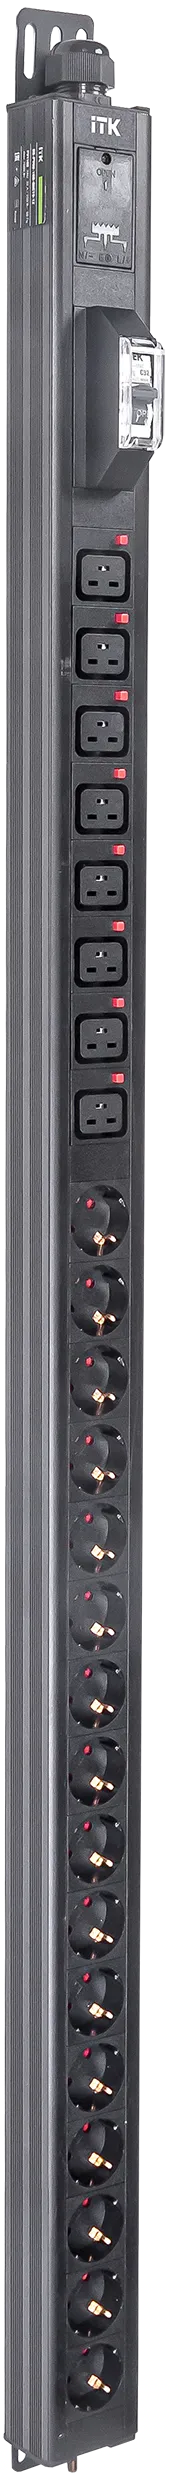 ITK BASE PDU вертикальный PV1102 30U 1 фаза 32А 16 розеток SCHUKO (немецкий стандарт) + 8 розеток C19 без кабеля с клеммной колодкой